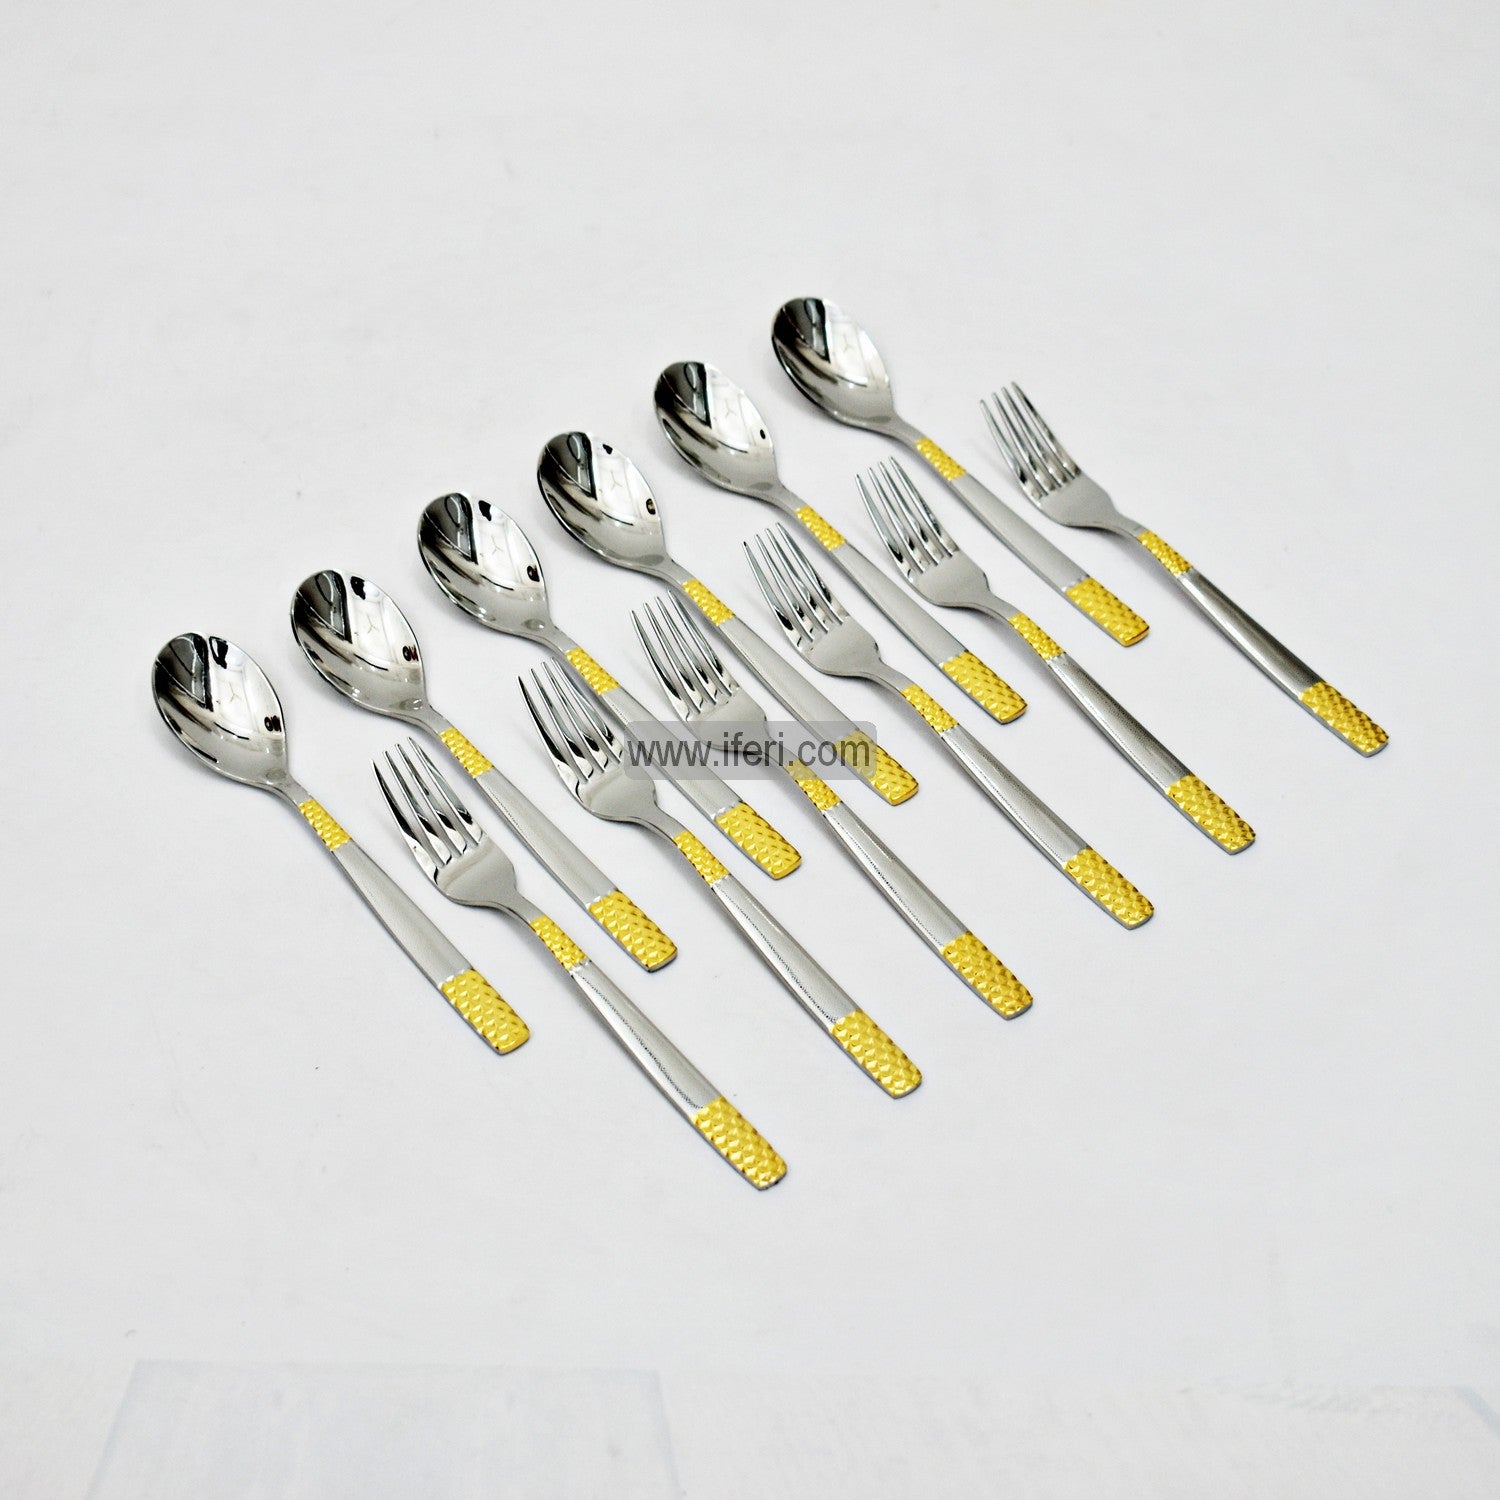 12 Pcs Stainless Steel Tea Spoon & Fork Set EB21199